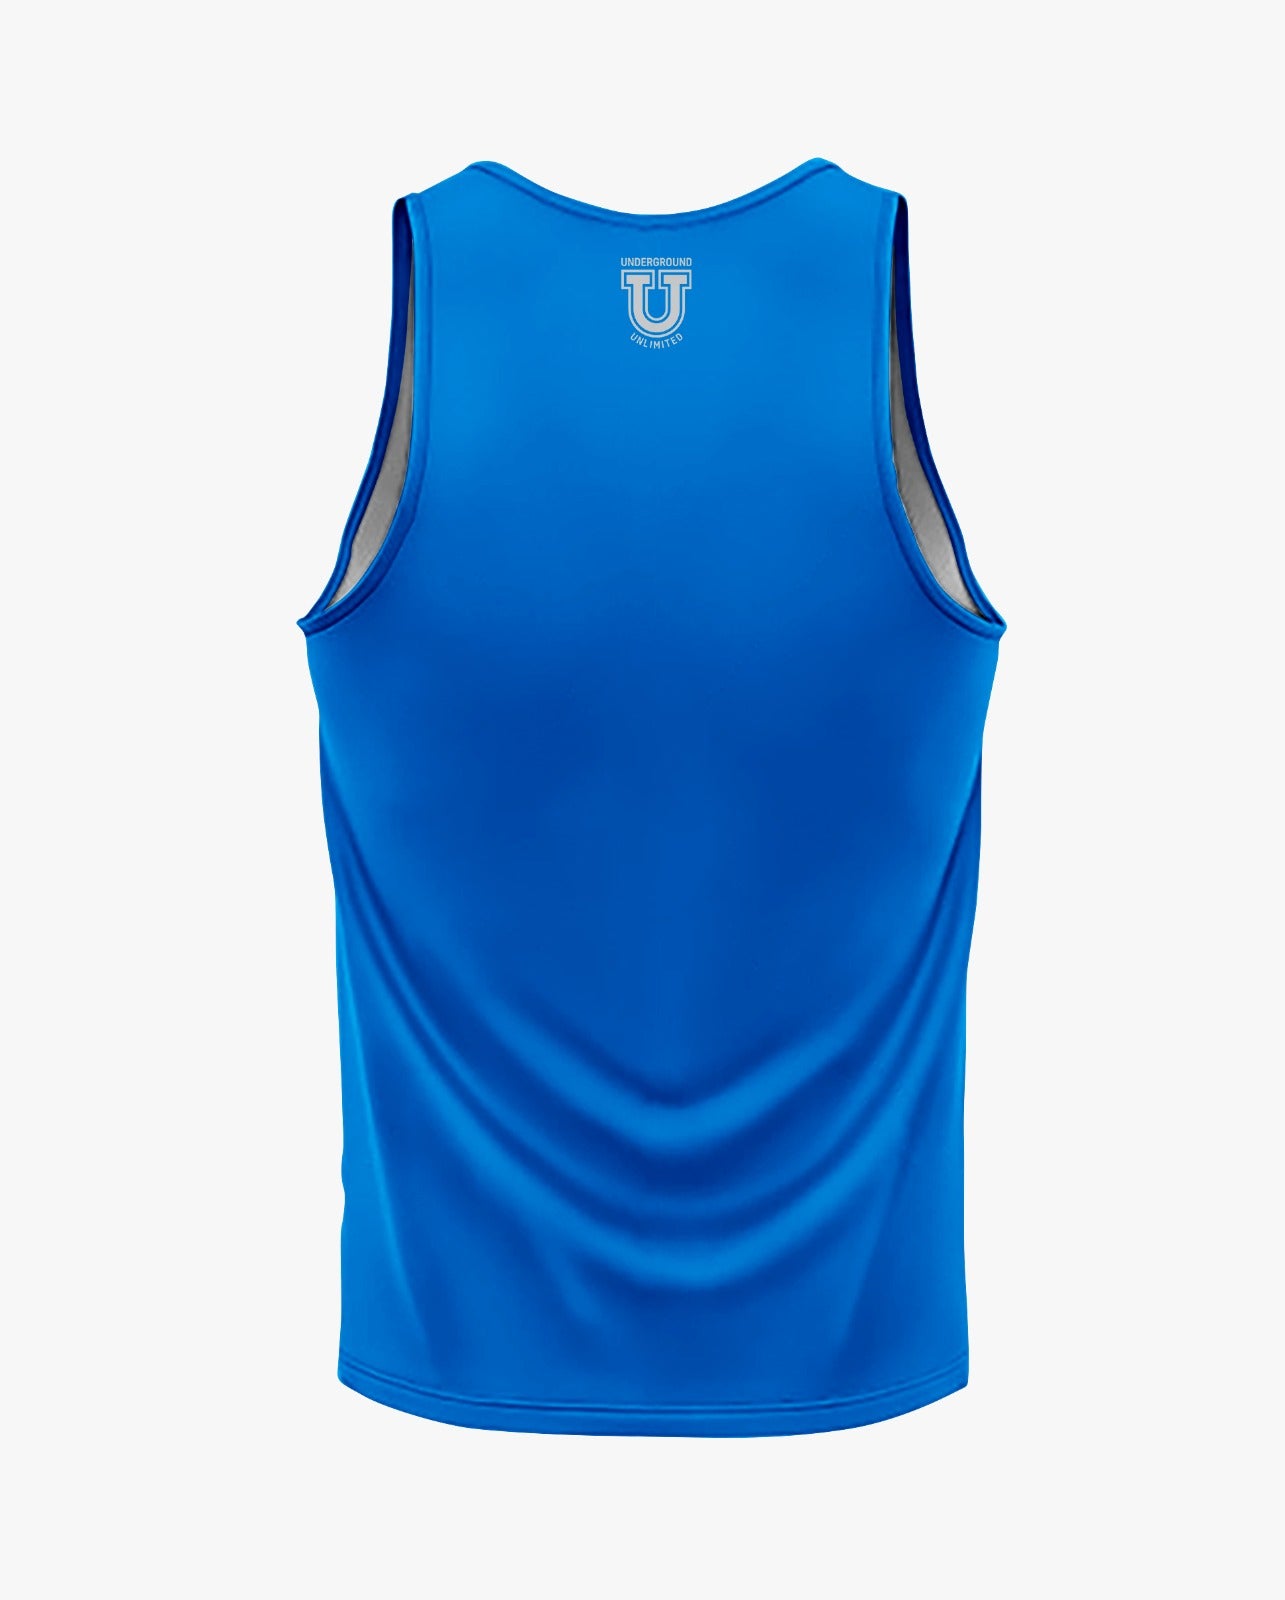 Buccaneers Cheerleading Dri Tech Men's Tank Top ~ Solid Blue